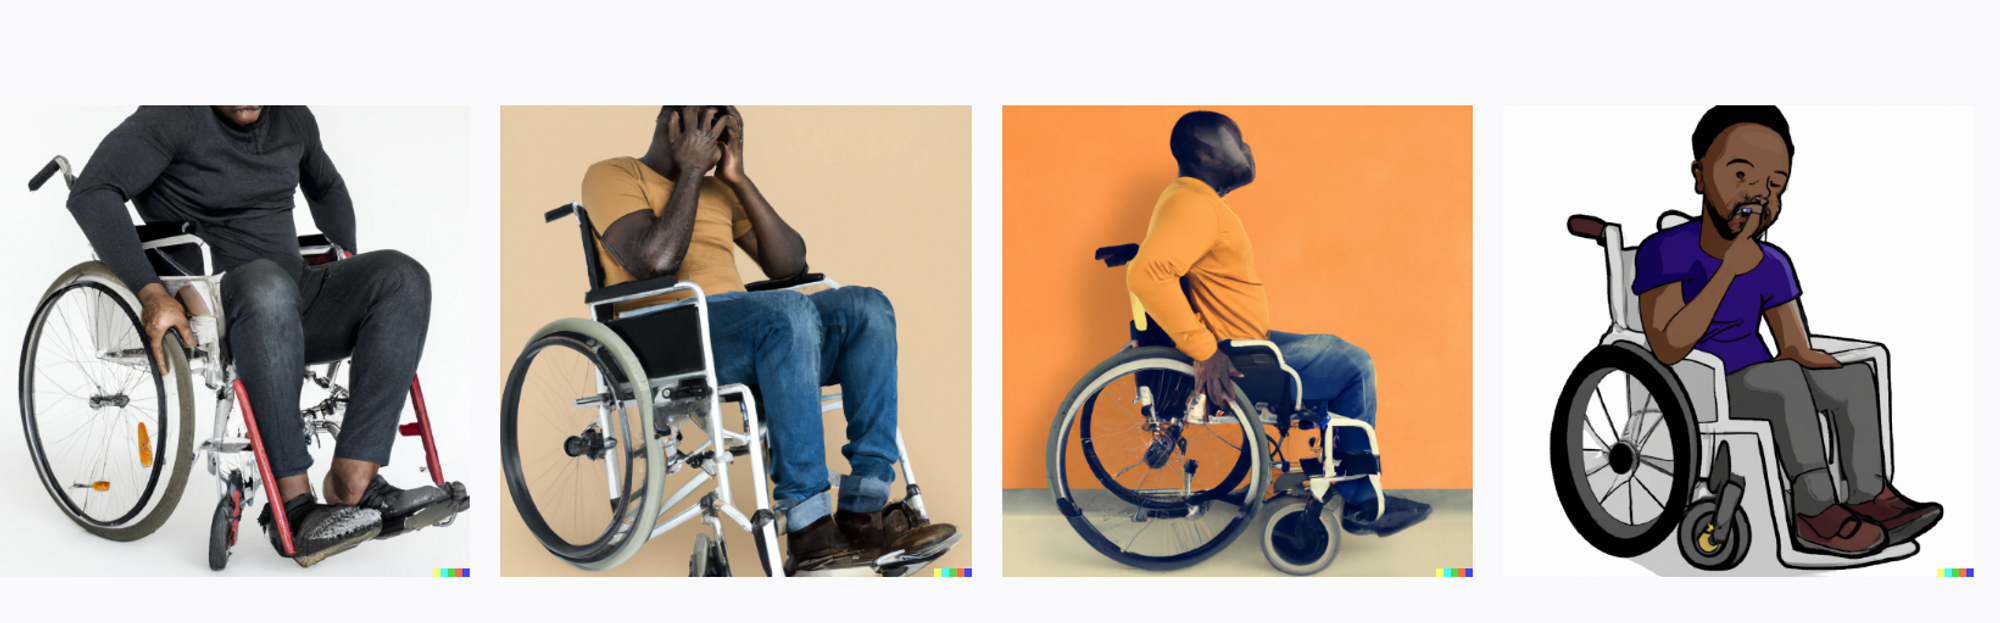 photos de personnes assises en fauteuil roulant